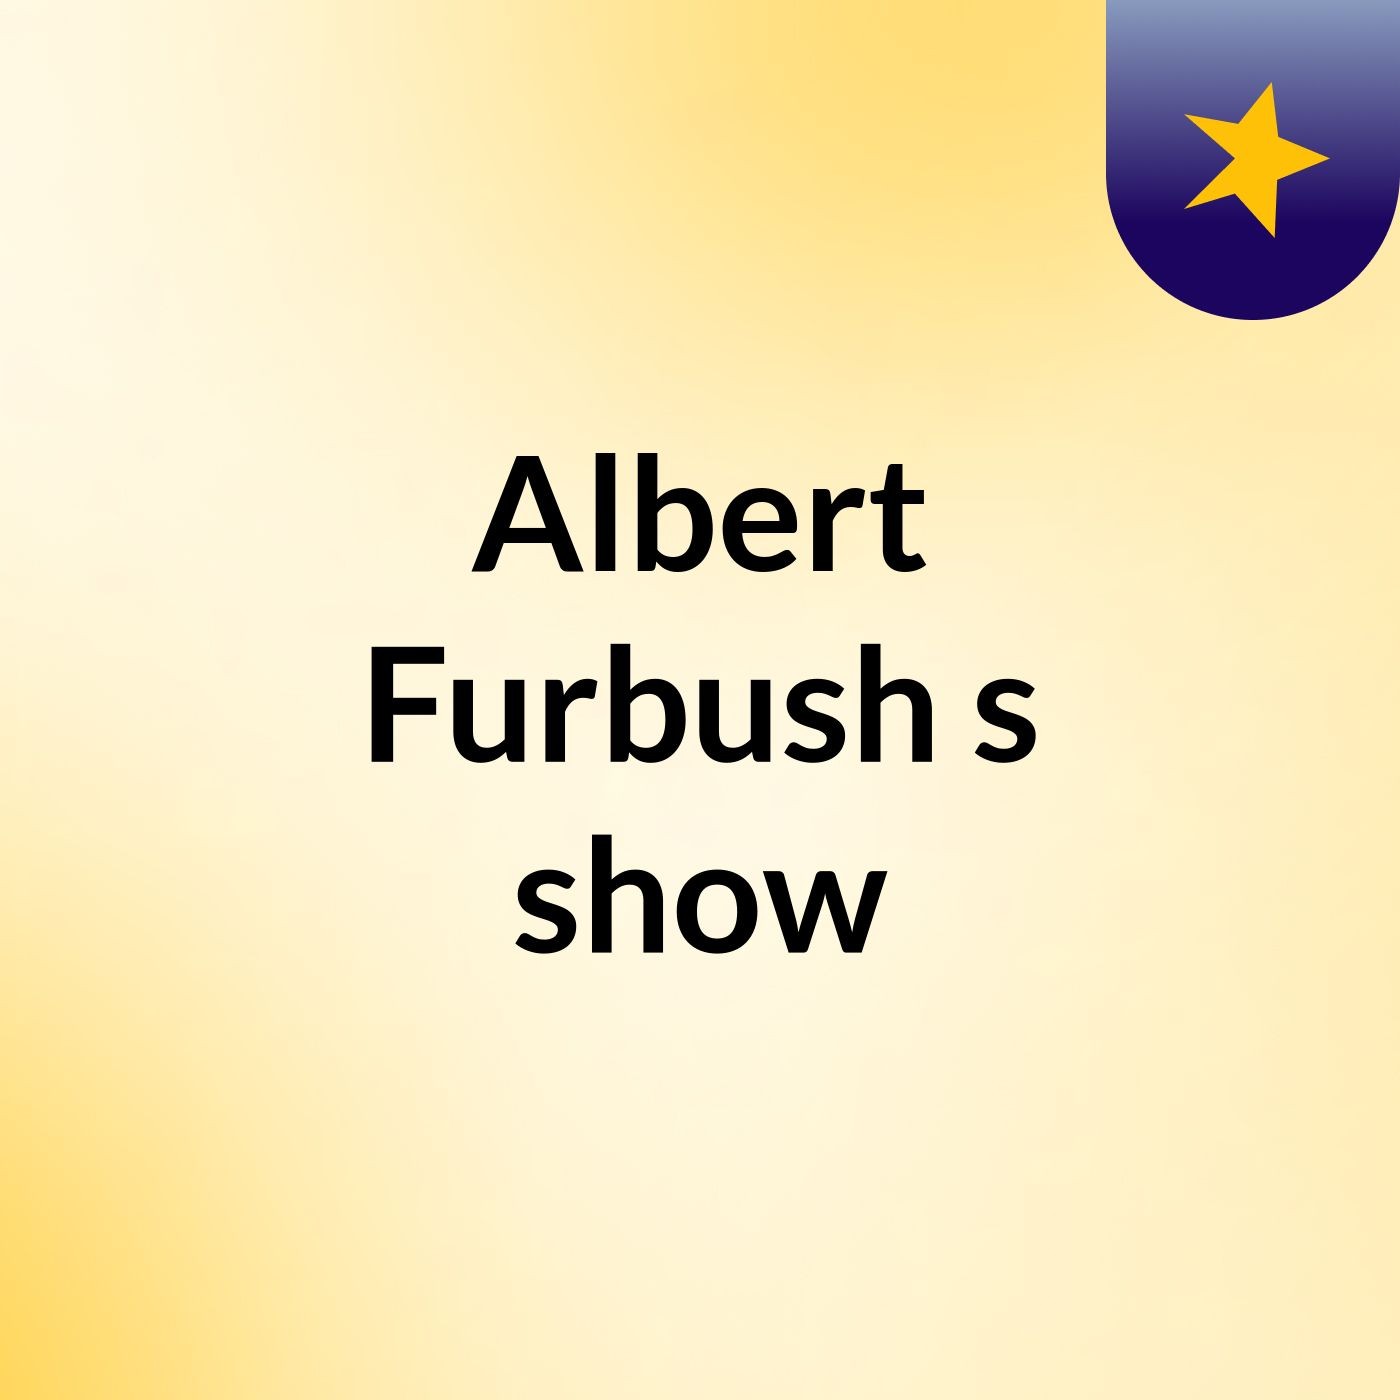 Albert Furbush's show